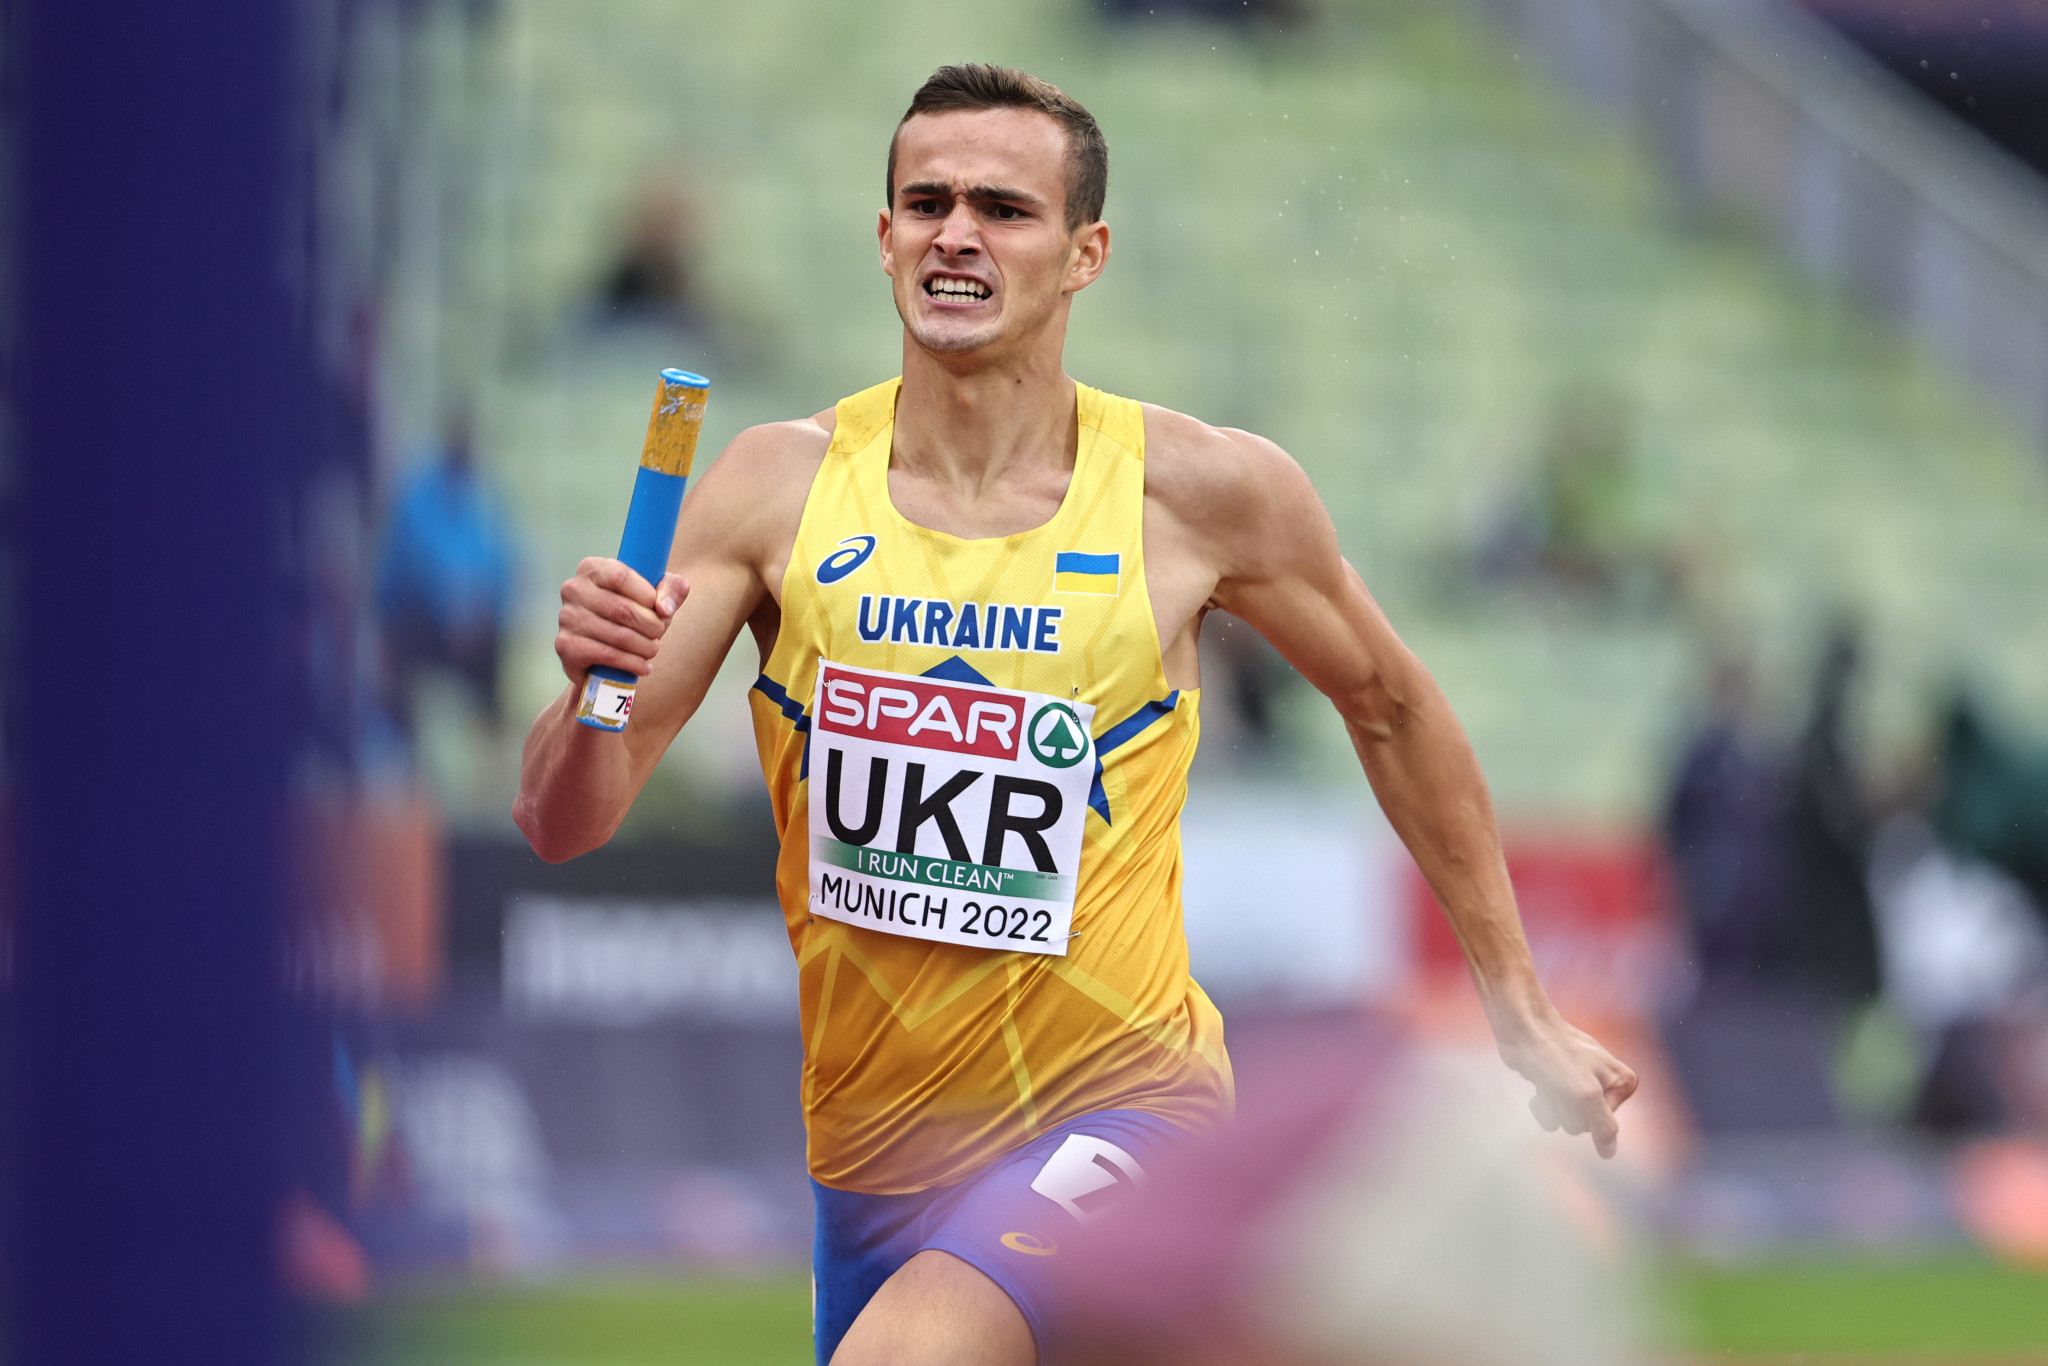 Ukraine athletics team to train at Cardiff Metropolitan University in build-up to Paris 2024